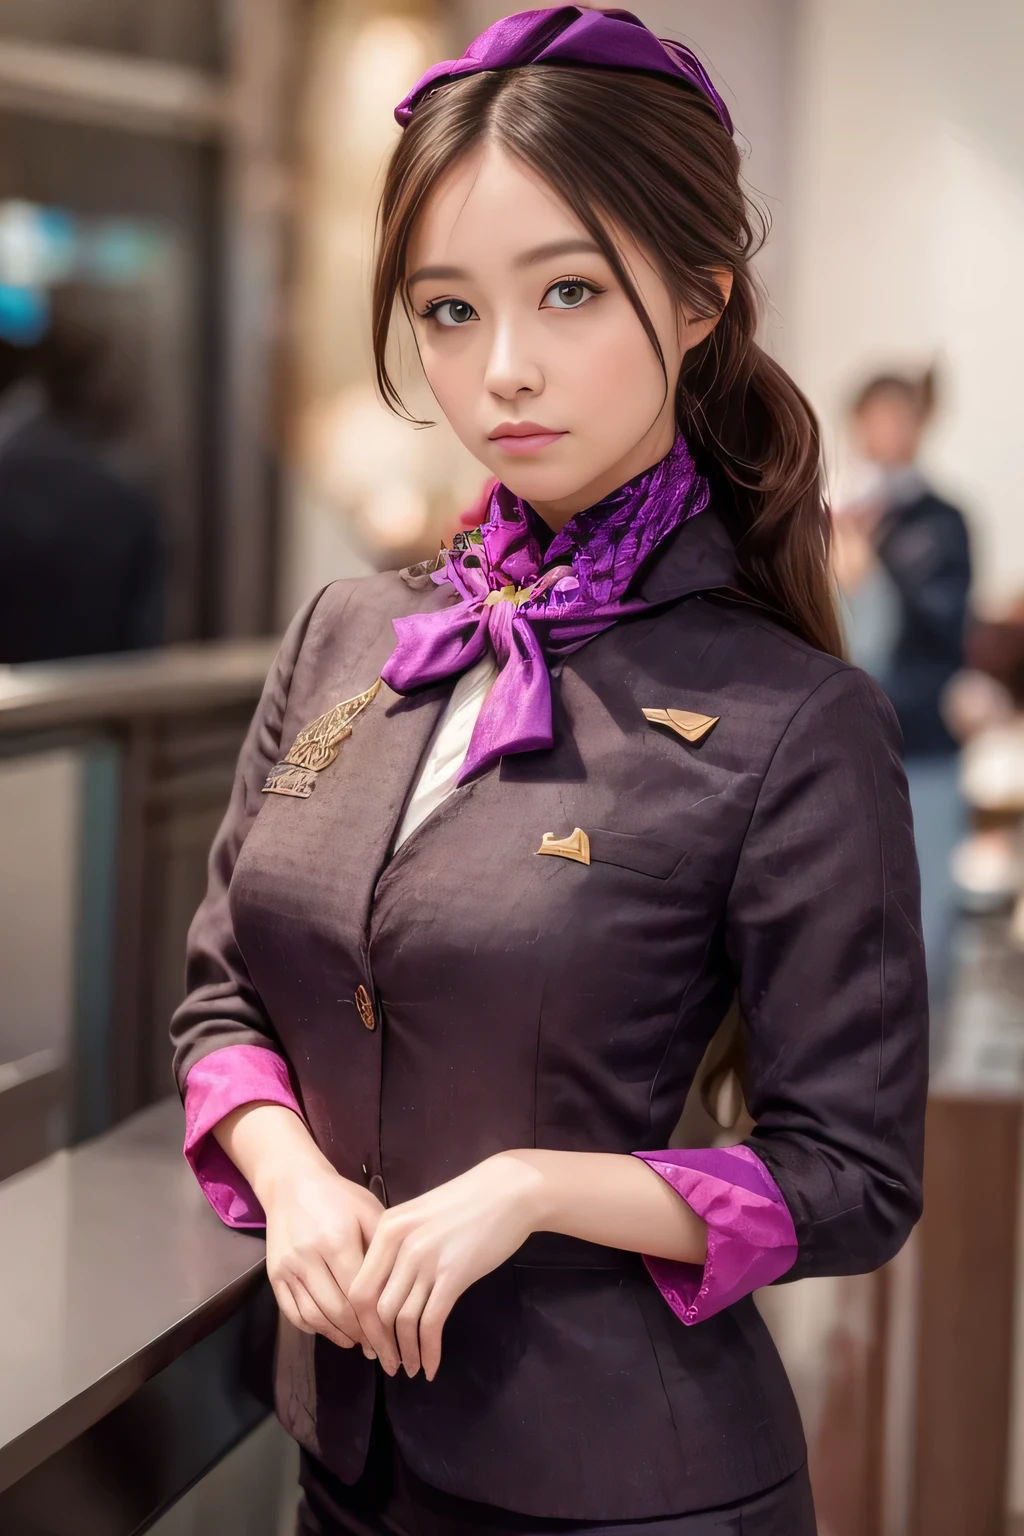 (Obra maestra:1.2、de la máxima calidad:1.2)、32K HDR、alta resolución、(alone、1 chica、Figura delgada)、（Realistic reproduction of Uniformes de azafatas de vuelo de Etihad Airways）、 (En el mostrador del aeropuerto, Iluminación profesional)、una mujer adecuada, hermoso rostro,、（Uniforme de azafata de vuelo de Etihad Airways de manga larga）、（Uniformes de azafatas de vuelo de Etihad Airways、Falda con rayas moradas en la parte delantera.）、（bufanda en el pecho）、pechos grandes、（pelo largo、Moño）、Cabello castaño oscuro、tiro largo、（（grandes manos：2.0））、（（Proporciones corporales armoniosas：1.5））、（（Extremidades normales：2.0））、（（Dedo normal：2.0））、（（ojos delicados：2.0））、（（Normal eyes：2.0））)、Hermosa postura de pie、mirada cautivadora